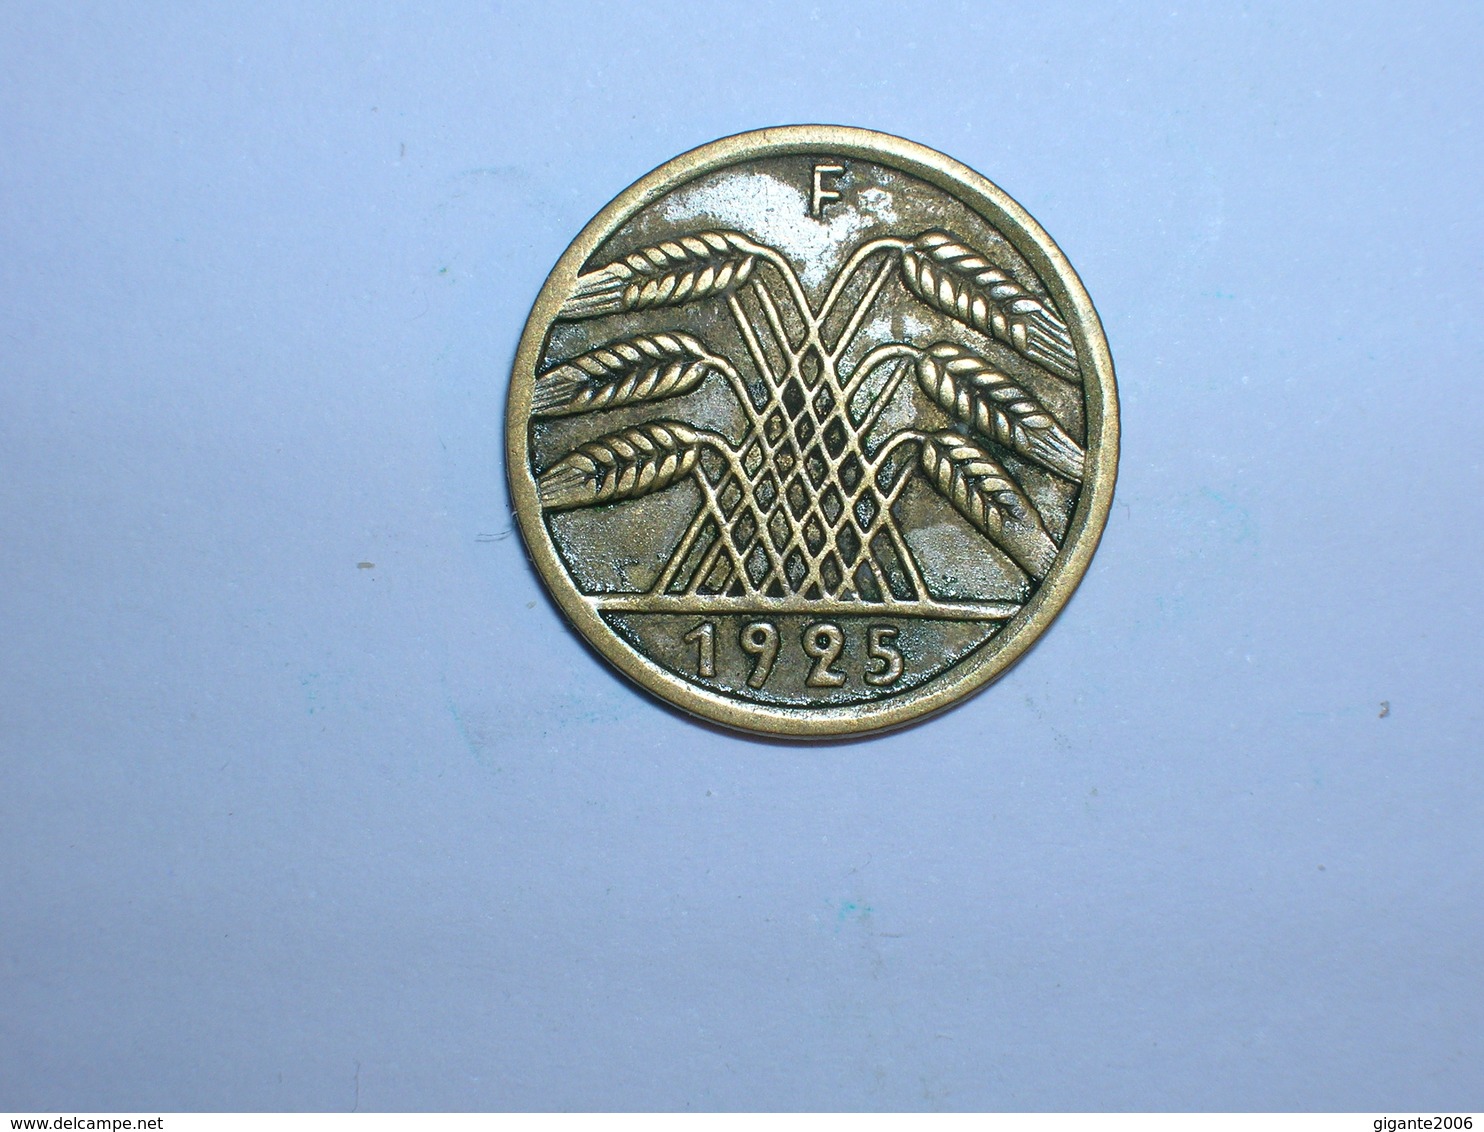 ALEMANIA 5 REICHSPFENNIG 1925 F (1342) - 5 Rentenpfennig & 5 Reichspfennig